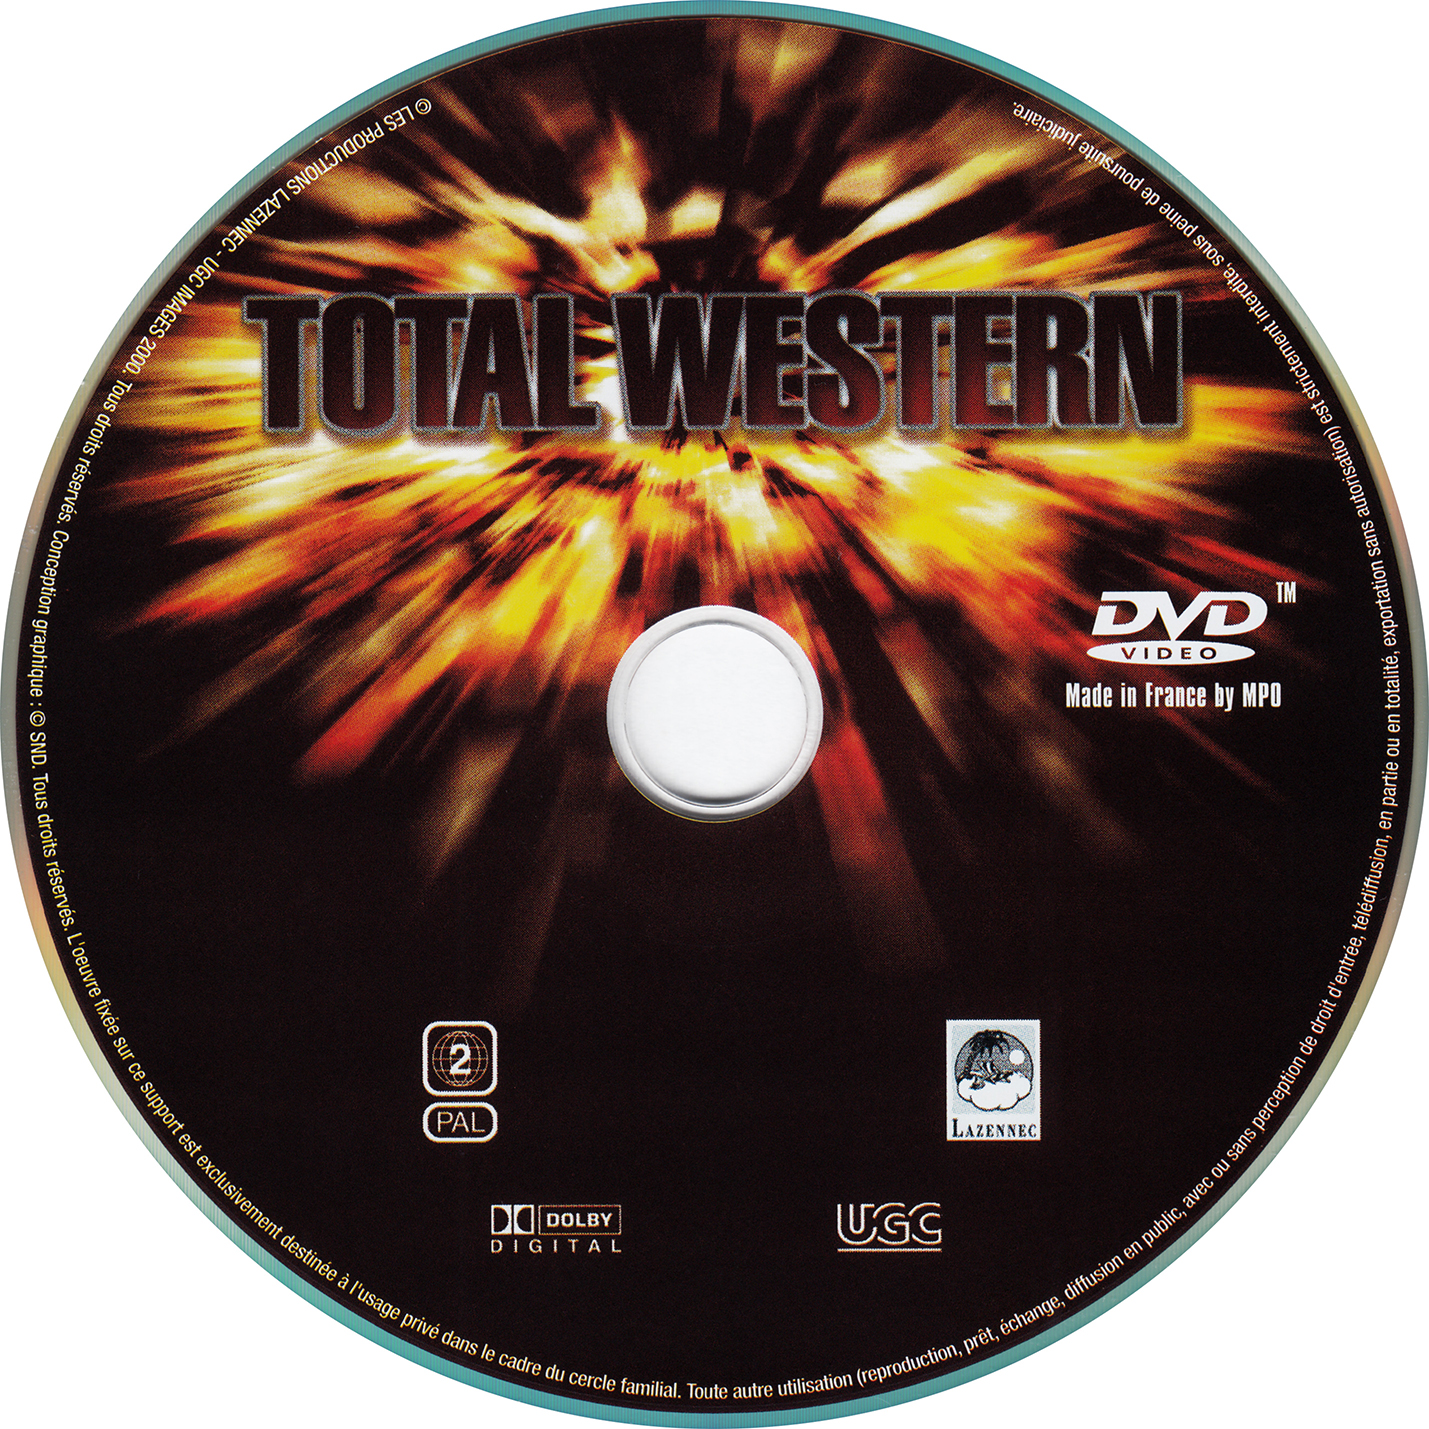 Total western v2